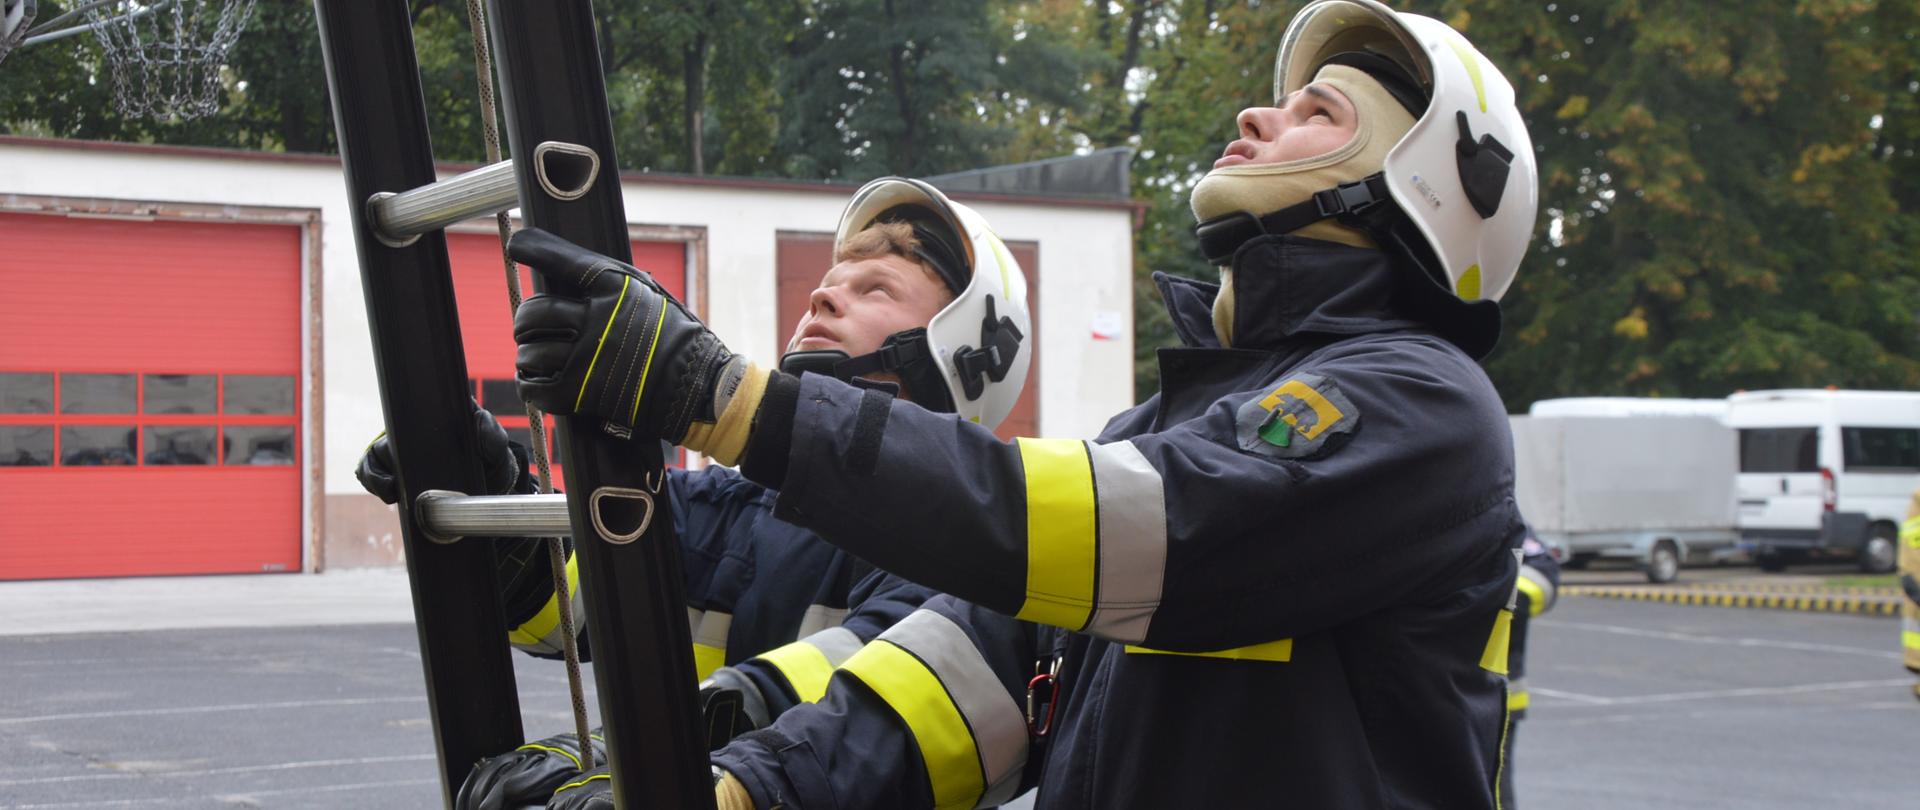 Szkolenie podstawowe strażaków-ratowników OSP. Plac komendy powiatowej w Rawiczu. Dwaj strażacy - kursanci sprawiają drabinę przystawną. Jedną rękę każdy z nich trzyma na bocznicy, a drugą - na szczeblu drabiny. Ćwiczący mają na sobie ubrania specjalne koloru ciemnego ze srebrno-żółtymi elementami odblaskowymi. Na ich głowach, zwróconych ku górze znajdują się hełmy koloru białego. W tle budynek, samochód z przyczepą oraz drzewa.